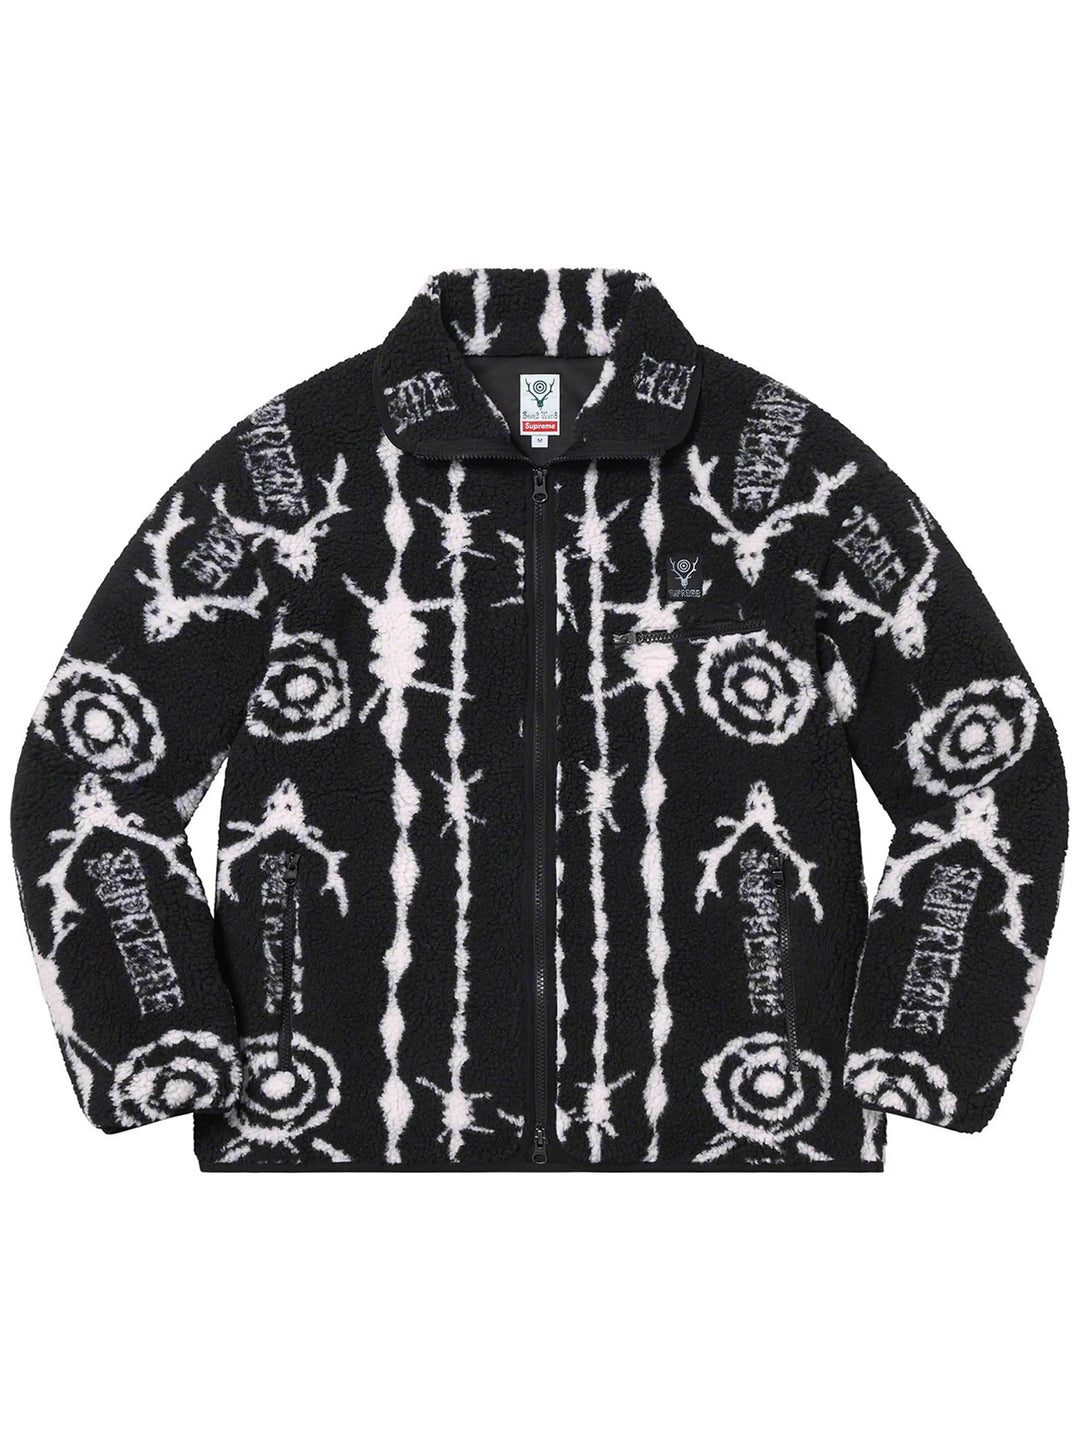 Supreme SOUTH2 WEST8 Fleece Jacket Black [SS21] Prior